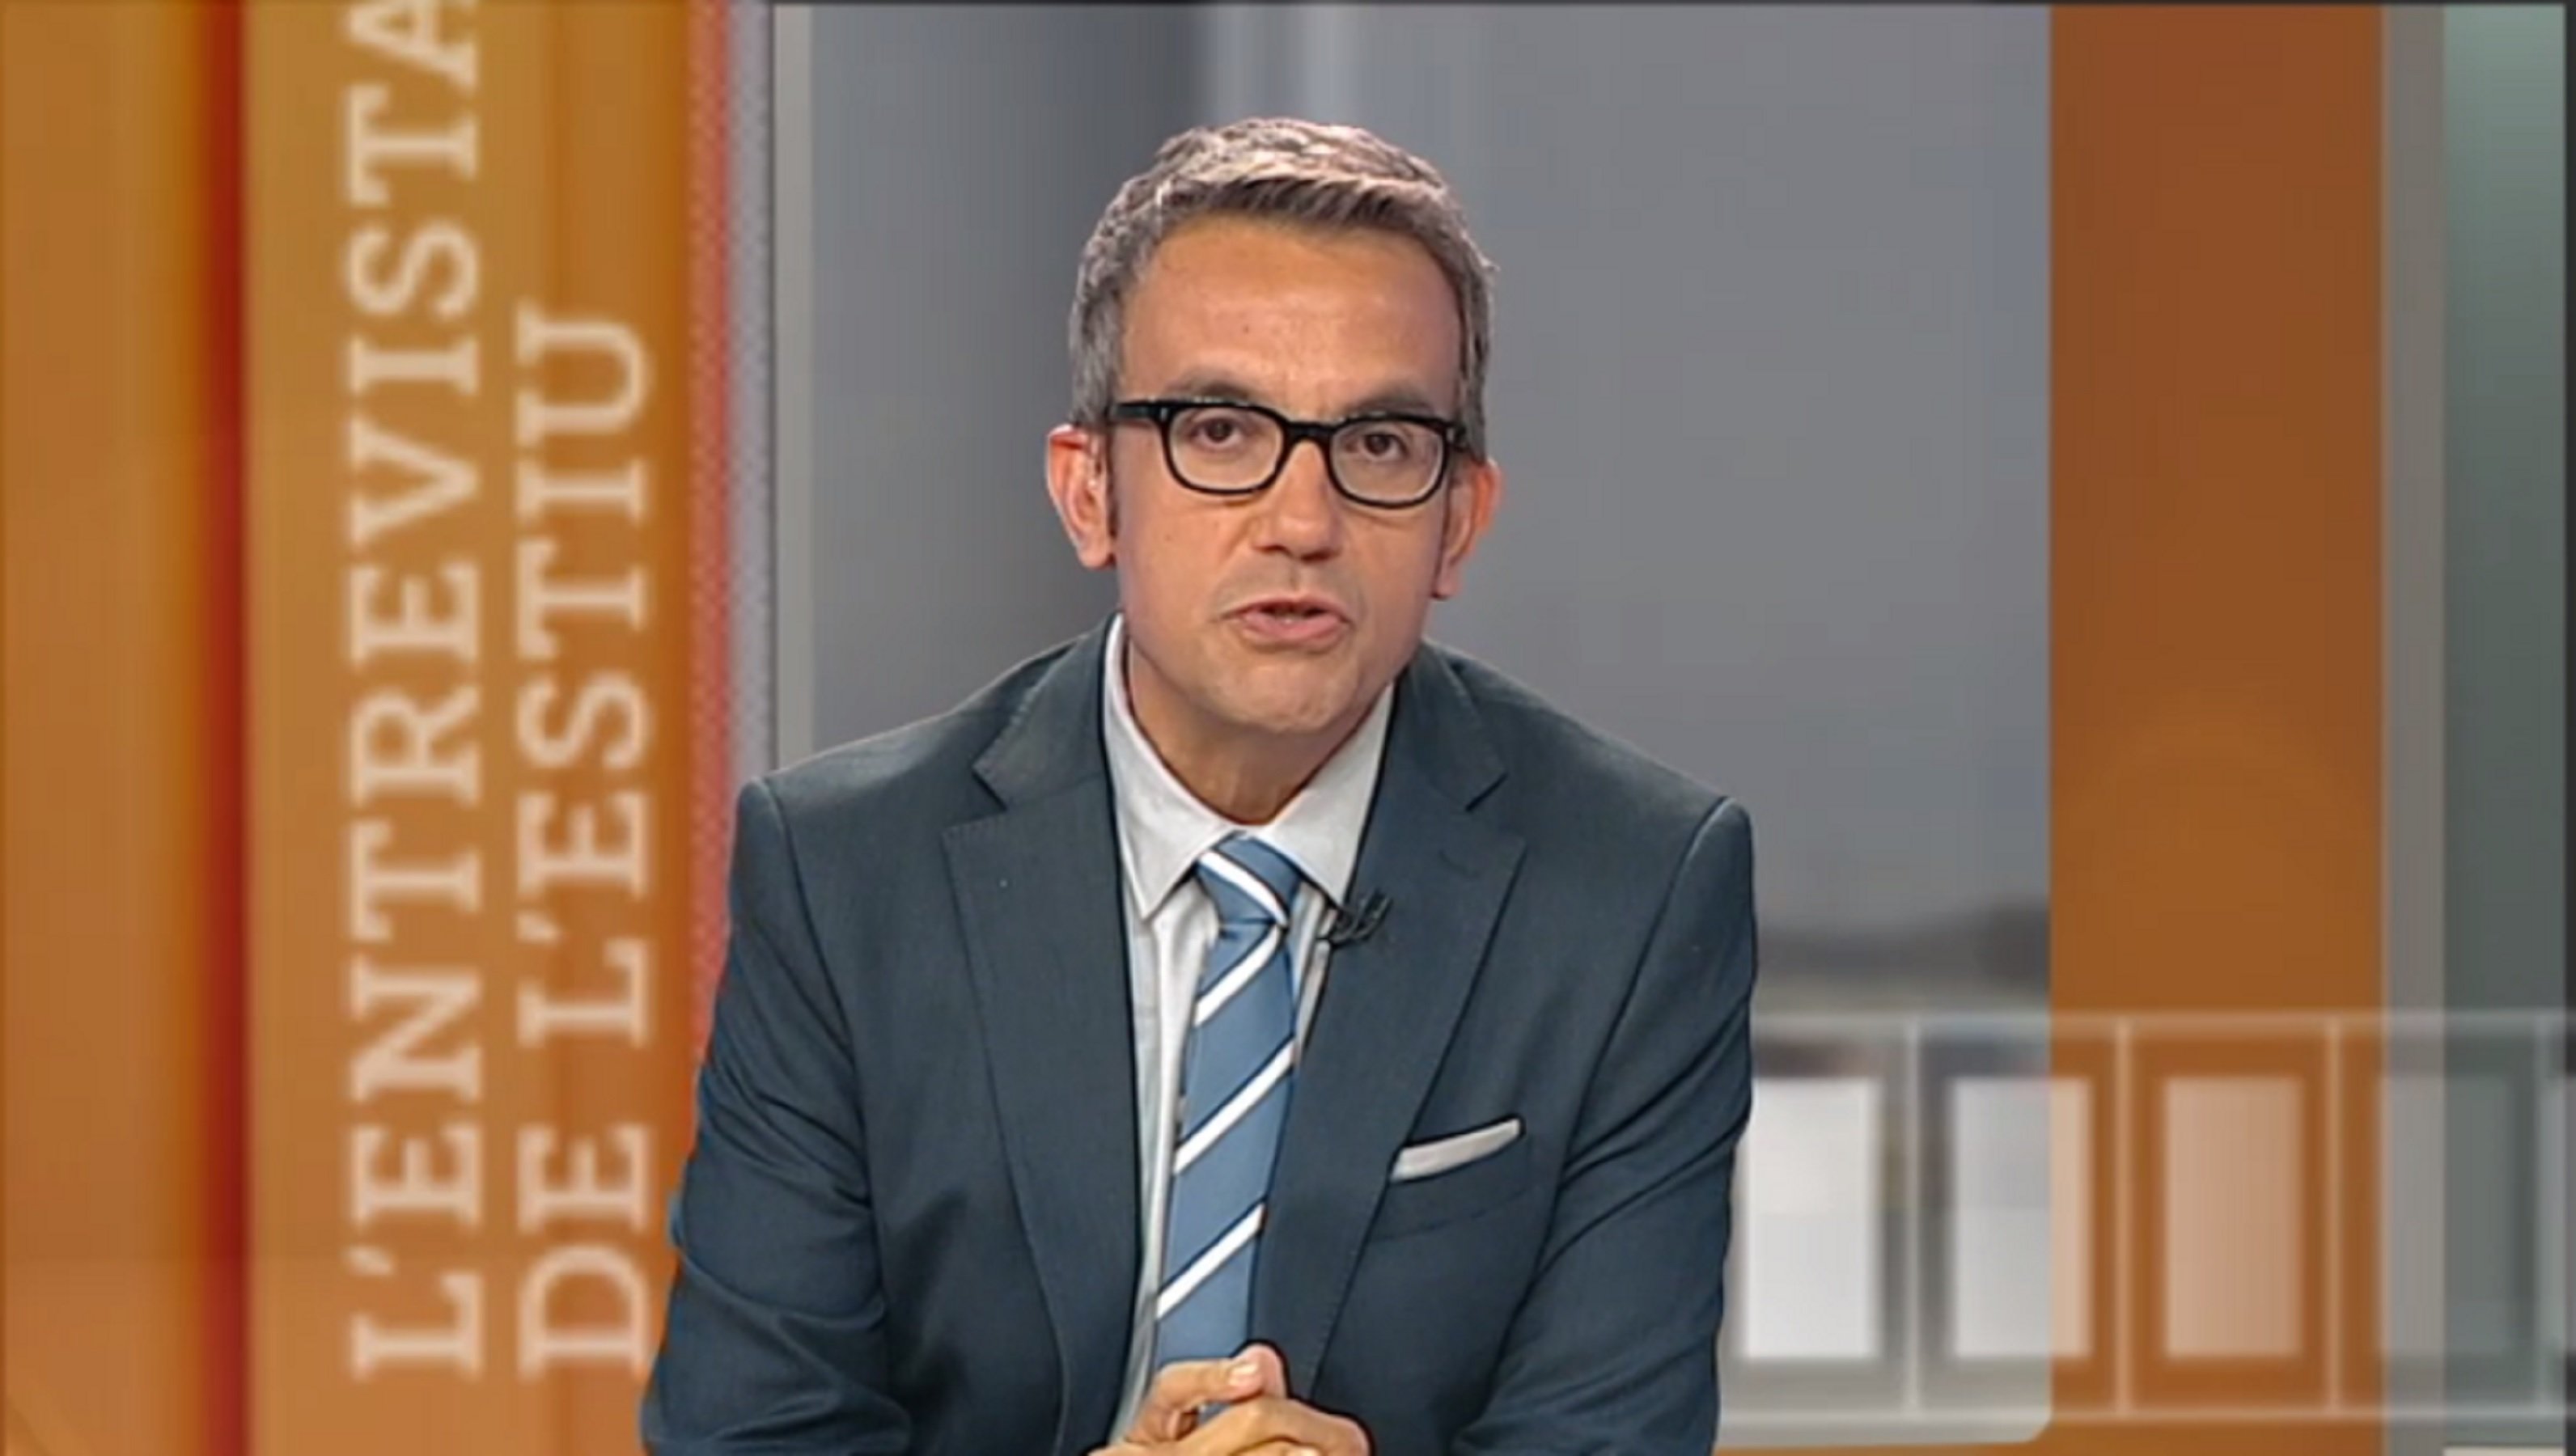 Desolació d'un presentador de TV3: "M'ha costat aguantar el plor"